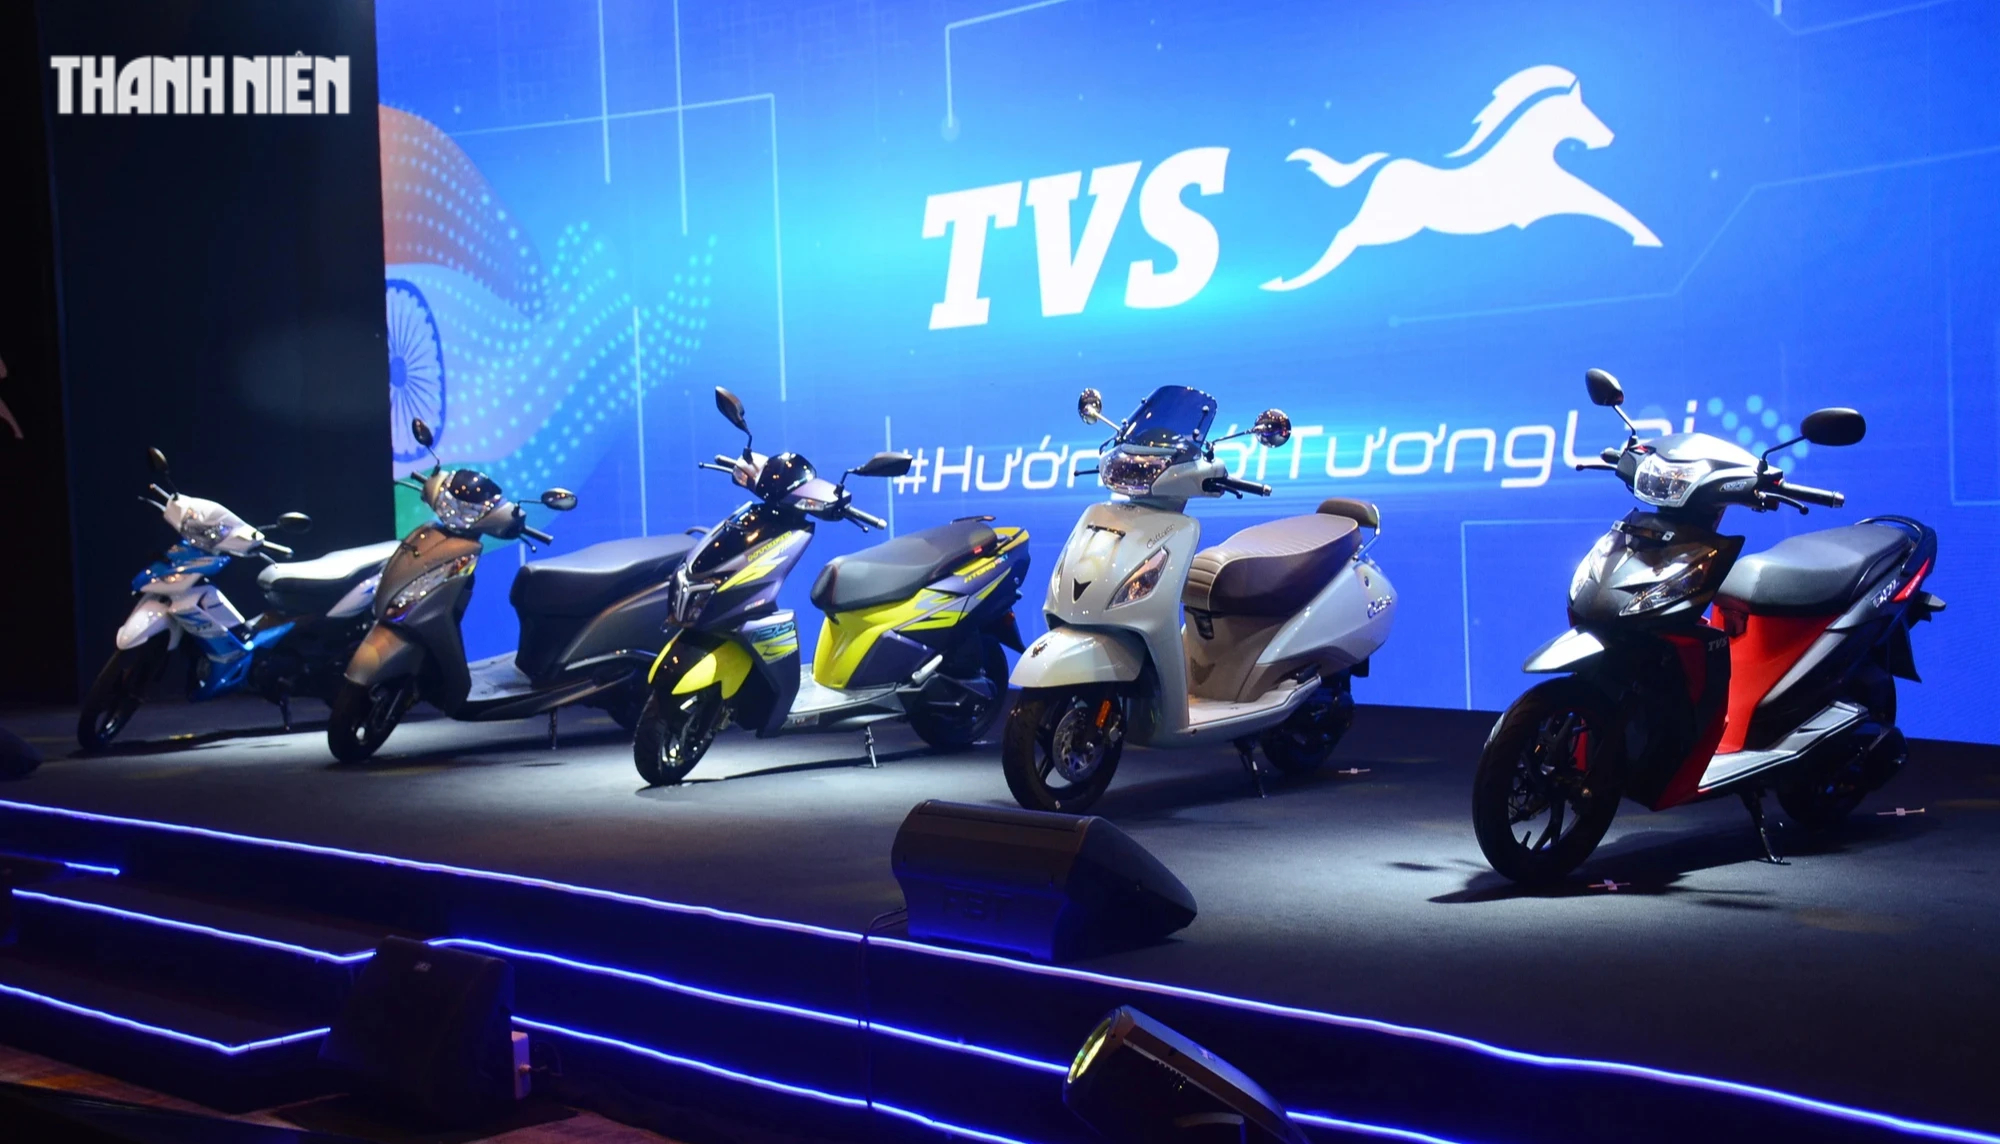 6 mẫu xe tay ga vừa gia nhập thị trường Việt Nam - Ảnh 1.